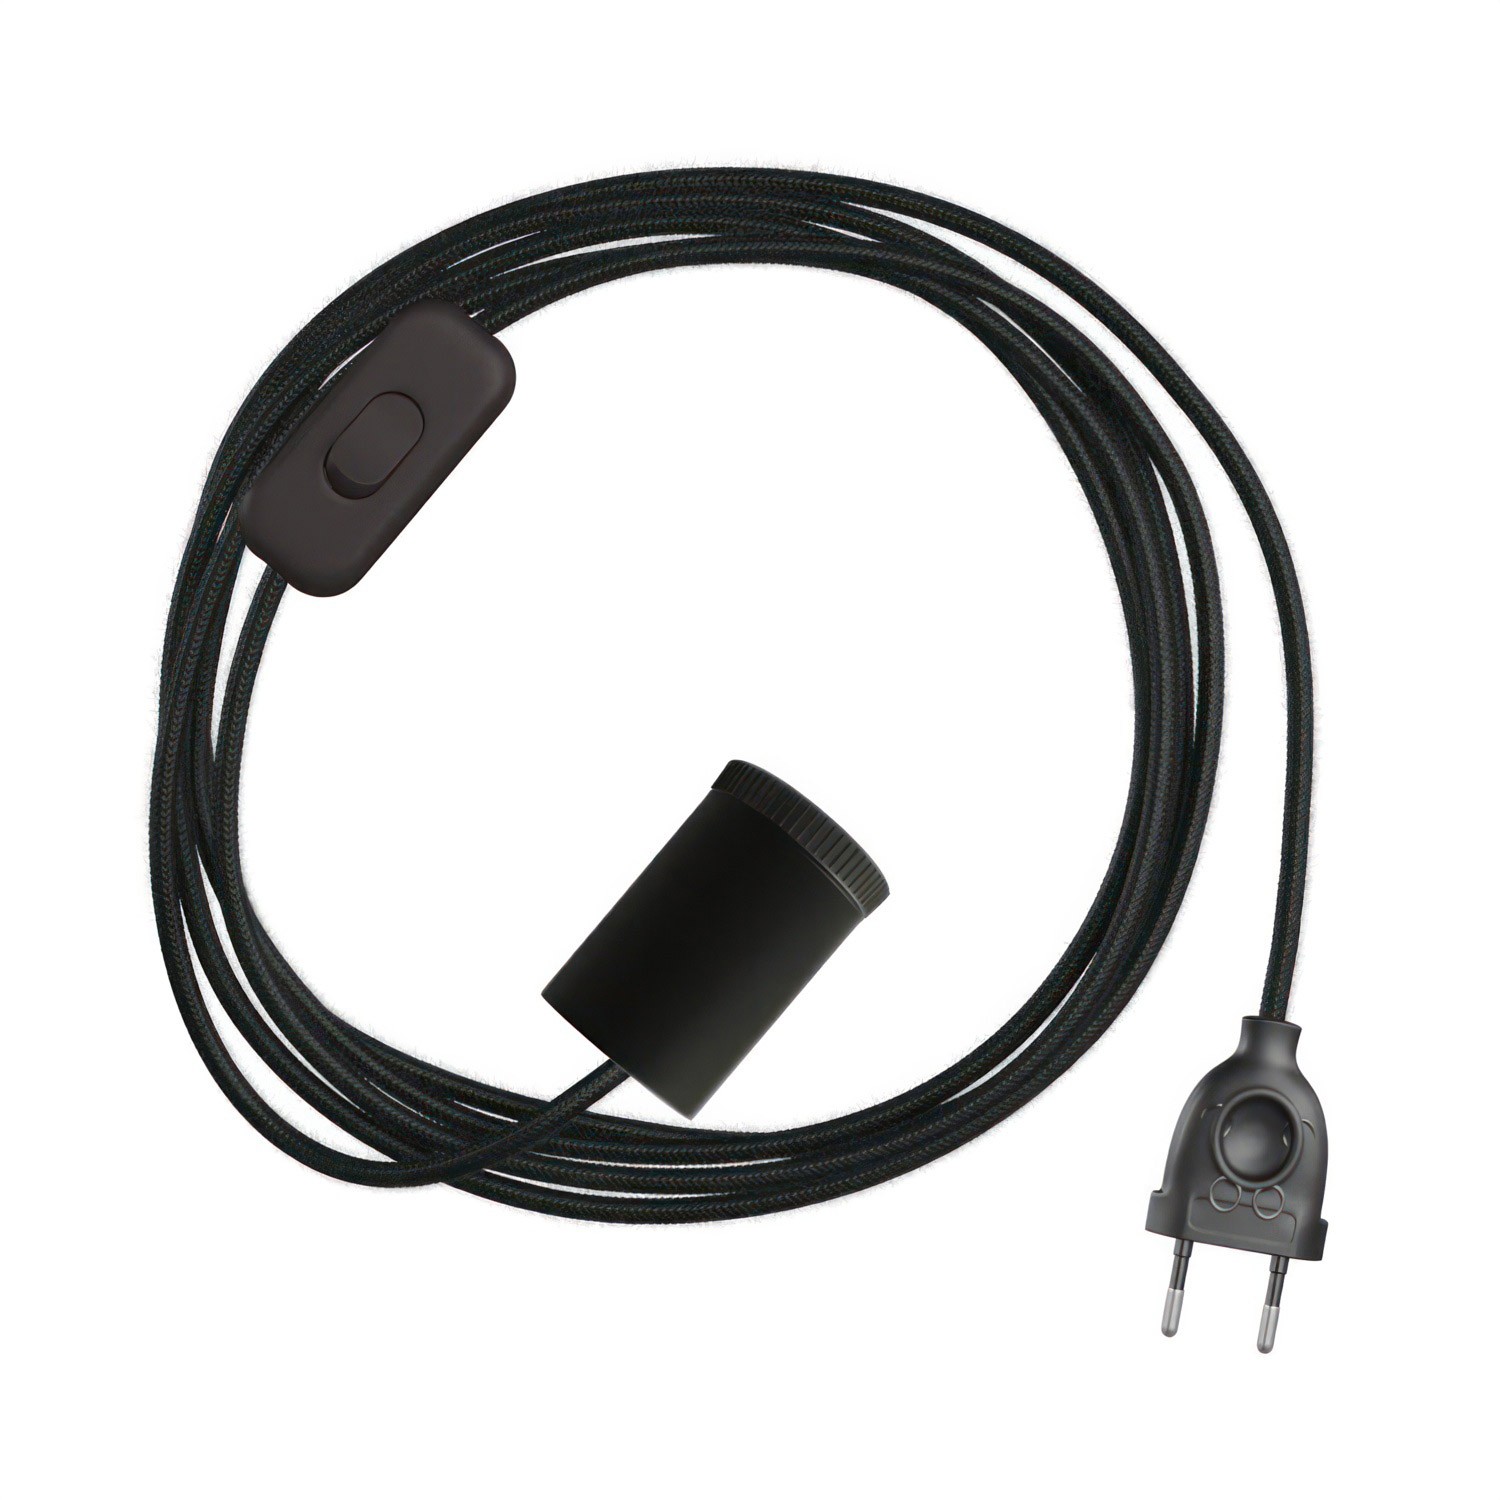 Lámpara Mini Spotlight GU1d0 con mazo de cables SnakeBis y clavija de 2 polos